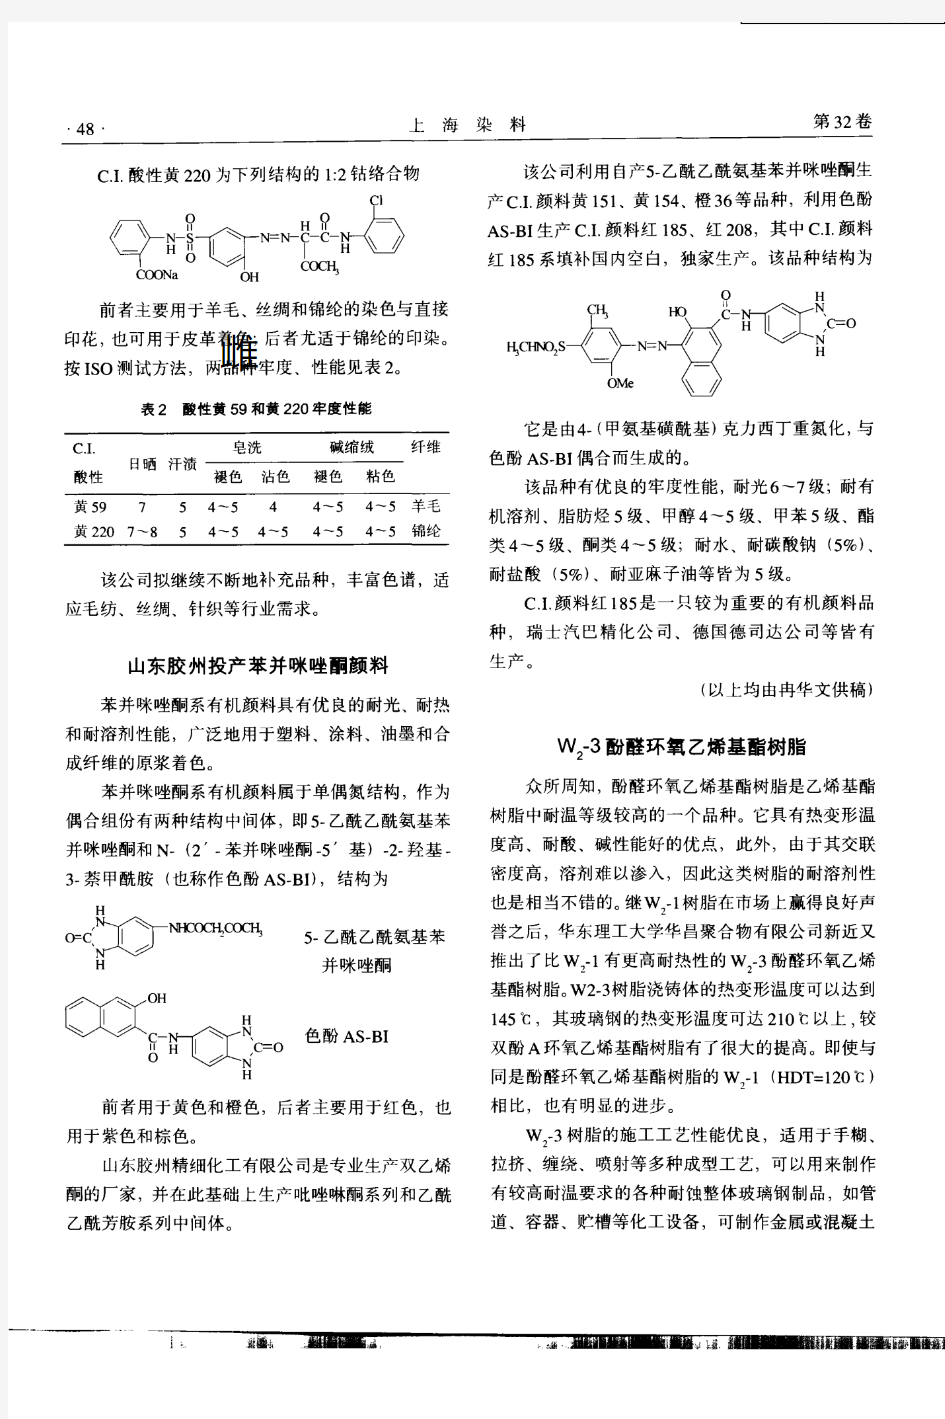 W2-3酚醛环氧乙烯基酯树脂